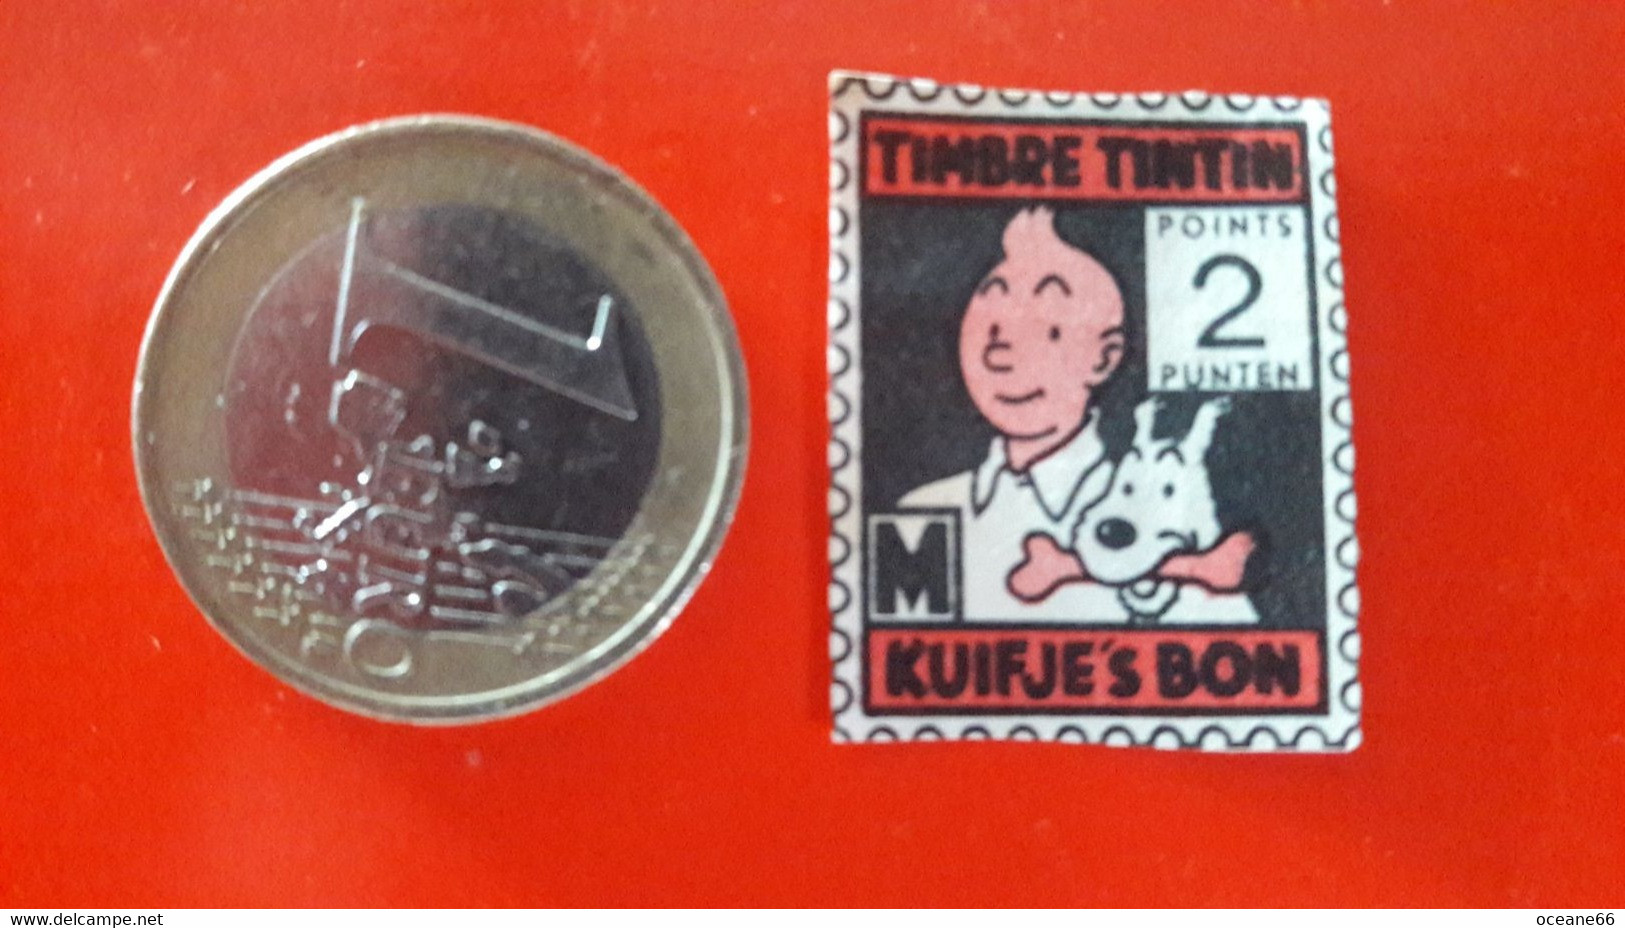 Chromo Timbre Tintin Kuifje's Bon 2 Points - Chromos